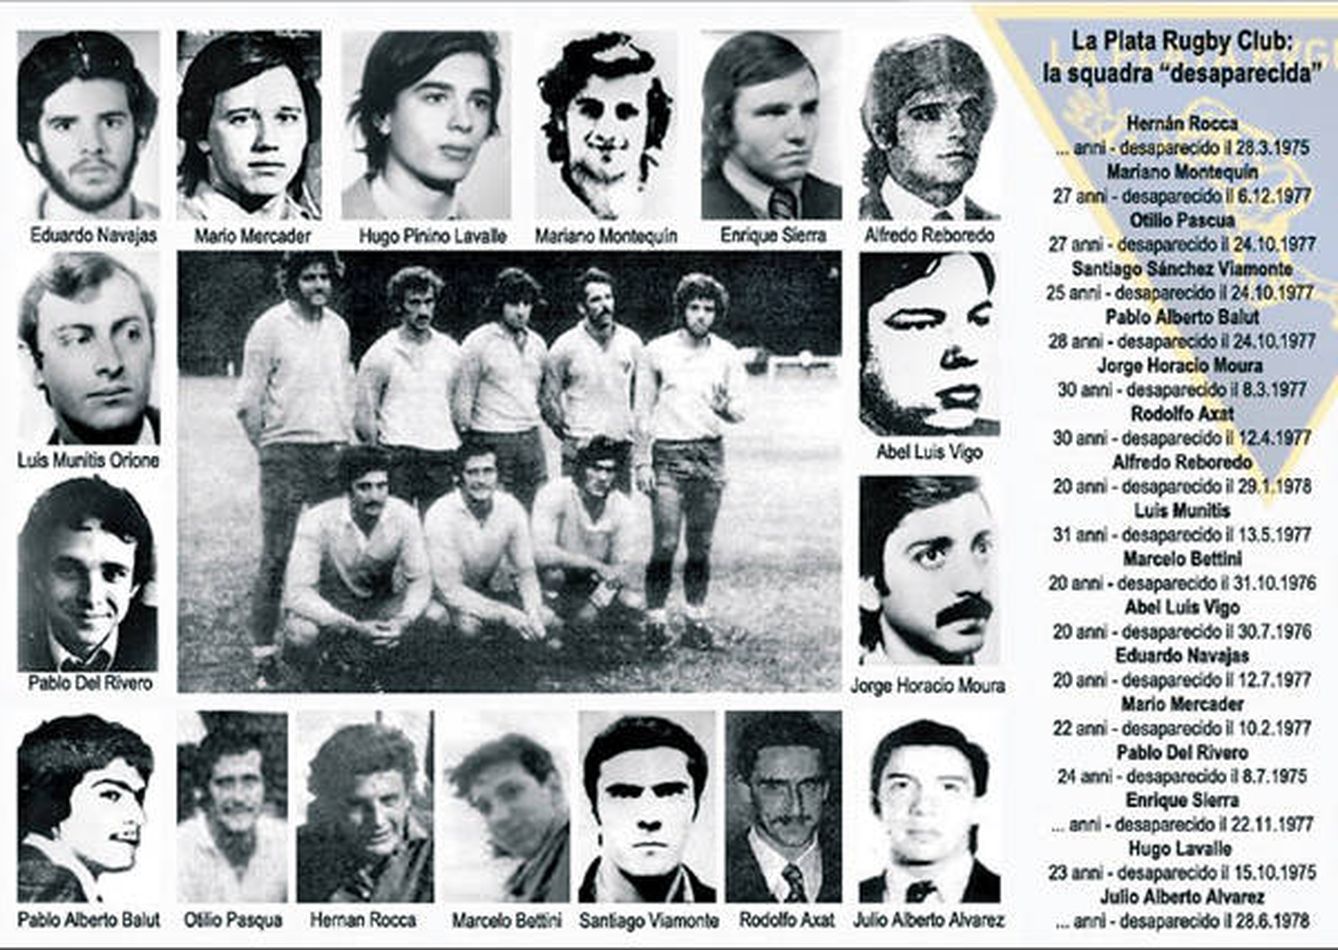 Imagen de desaparecidos del La Plata R.C. durante la dictadura argentina.